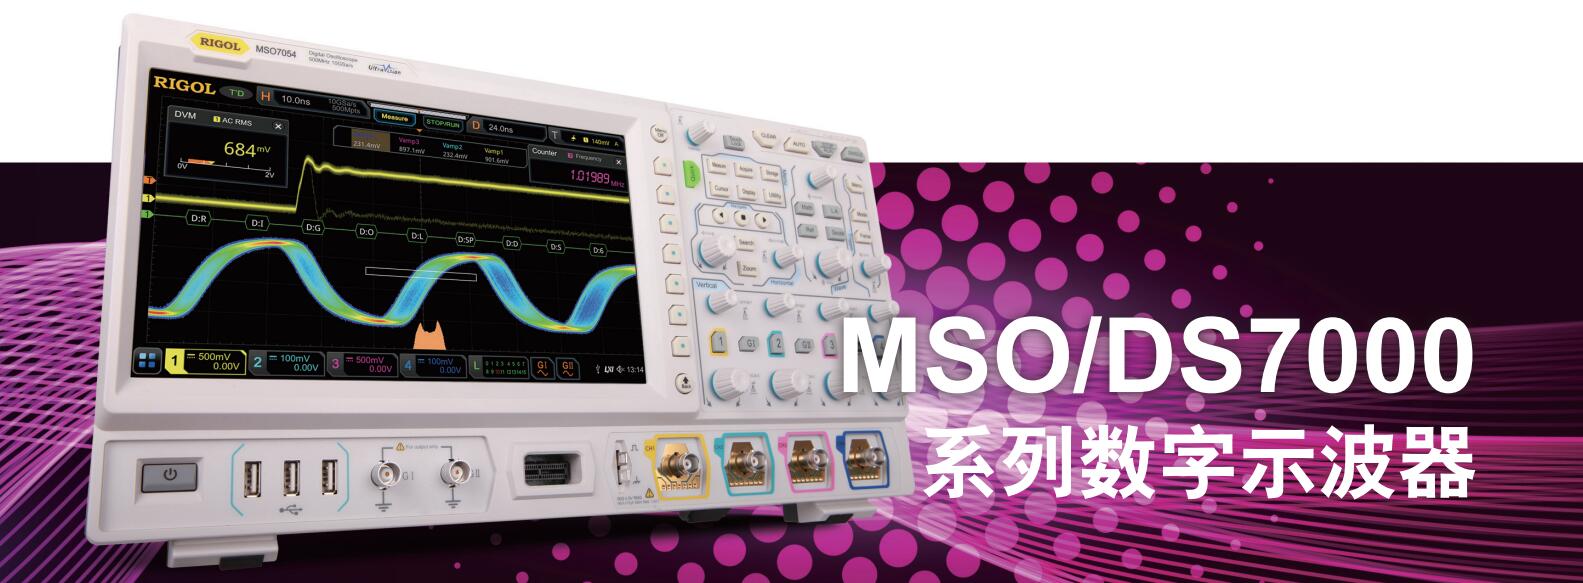 MSO/DS7000系列数字示波器(图1)